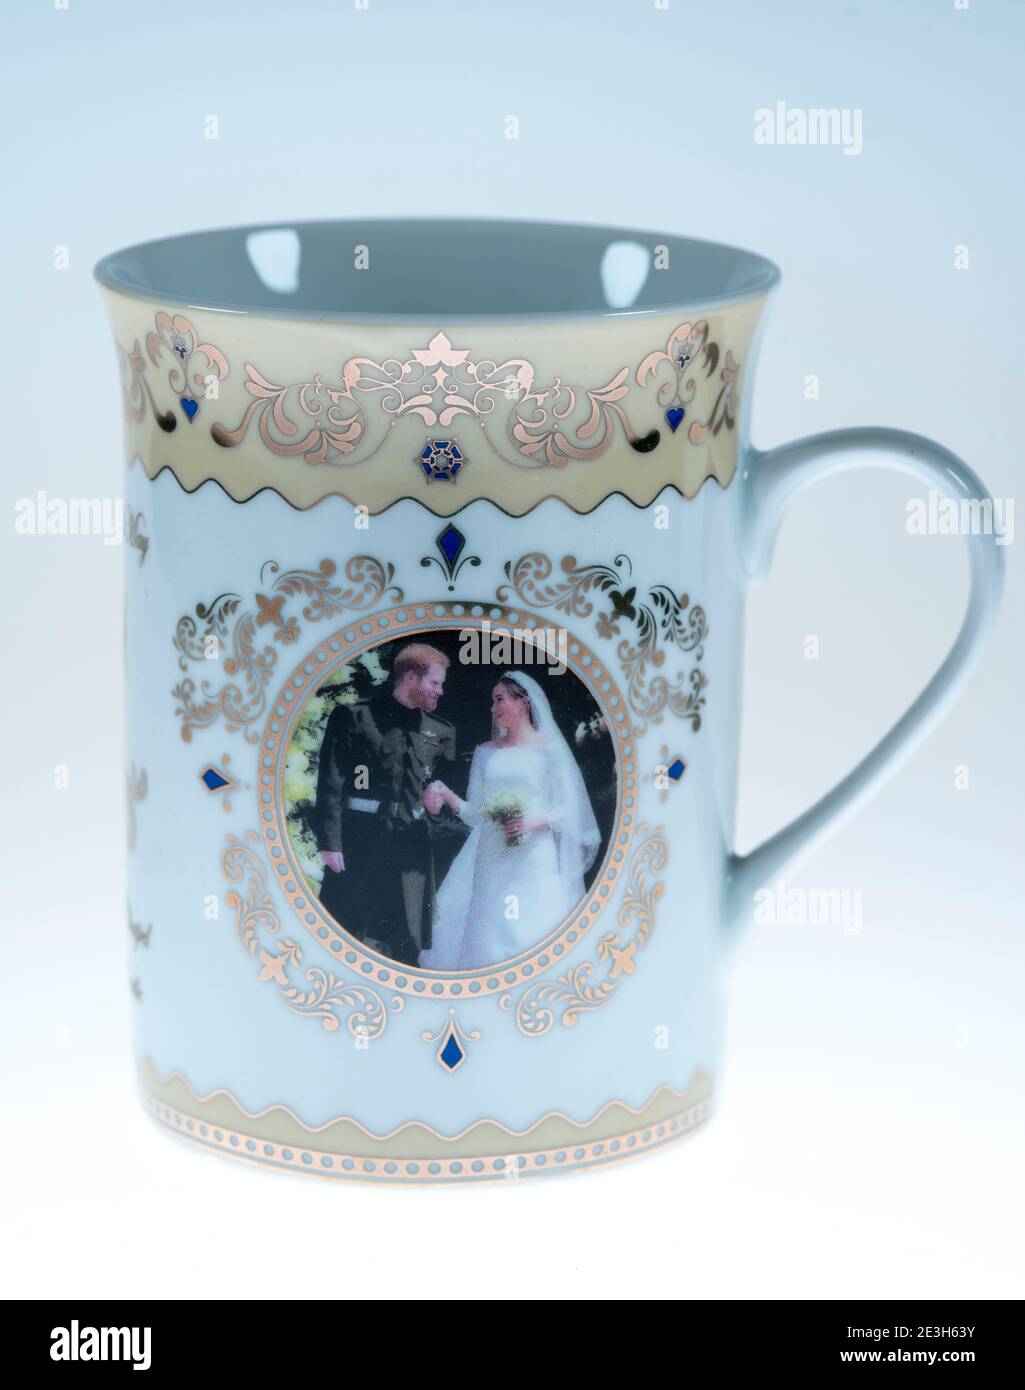 Prince Harry & Meghan Markle Royal Wedding China Mug 19th May 2018 